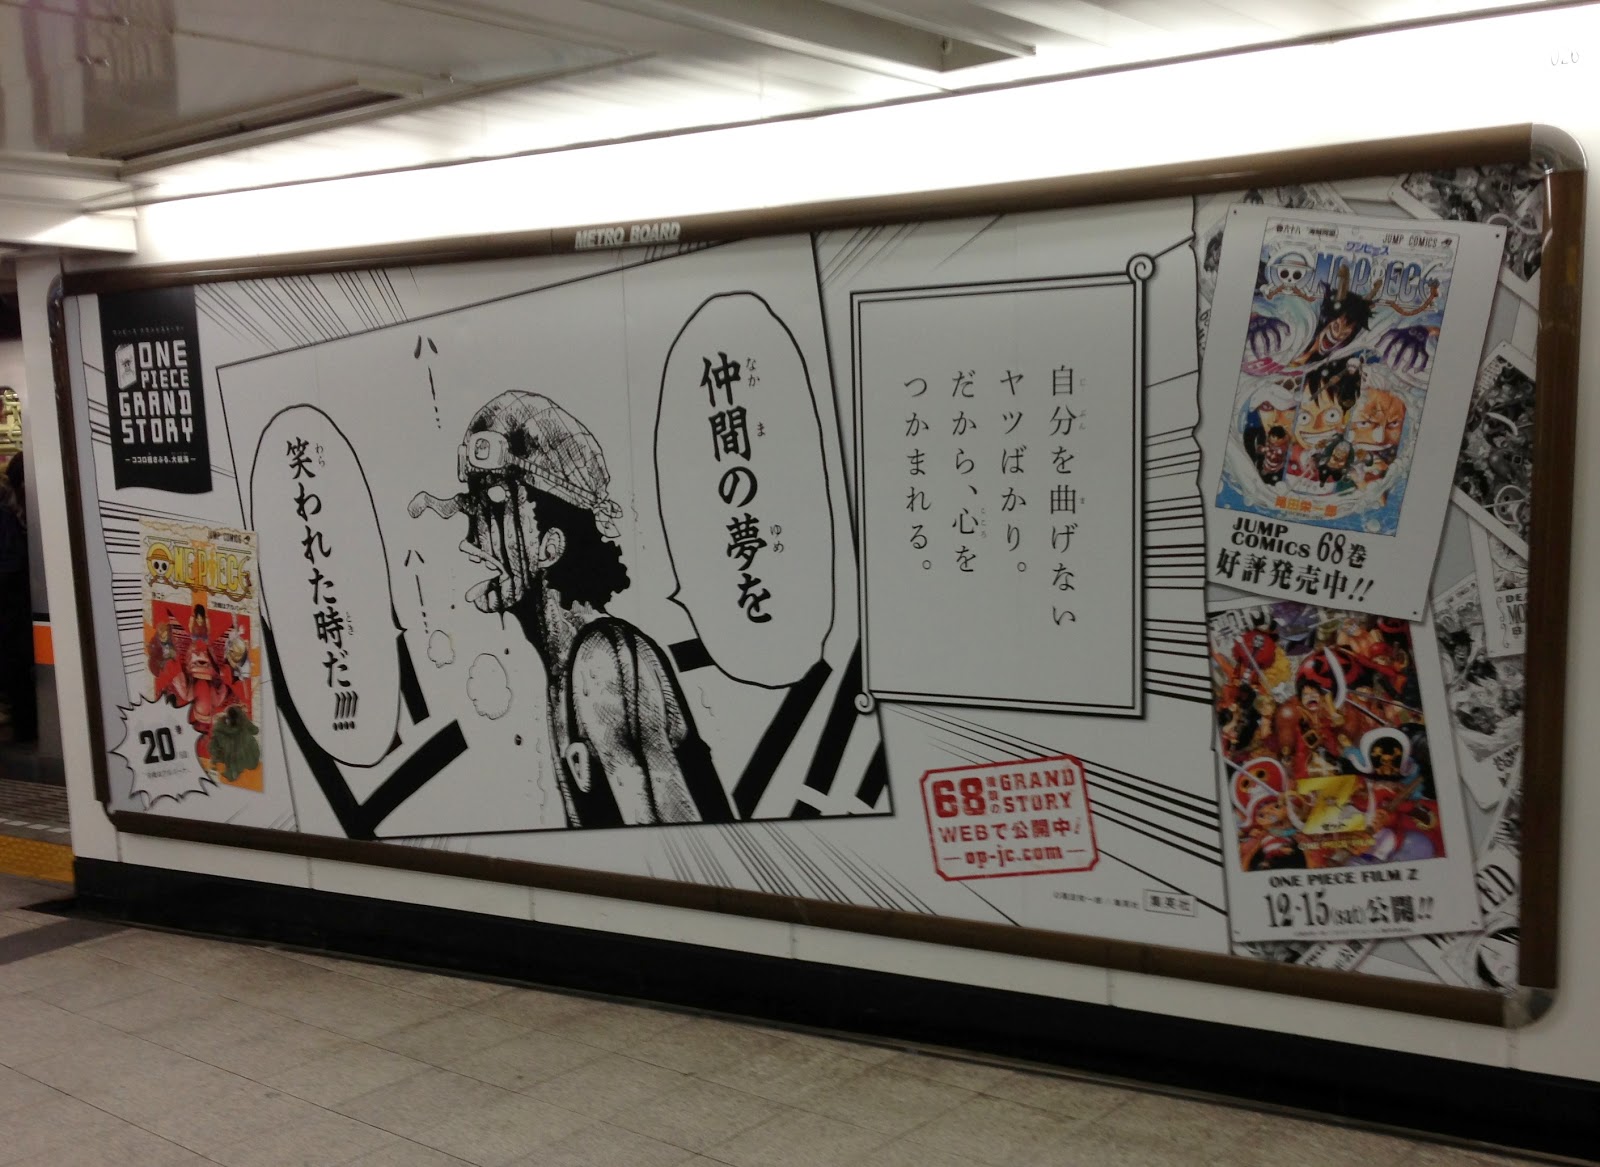 赤坂で世界一周 One ポスター Piece Grand Story ココロ揺さぶる 大航海